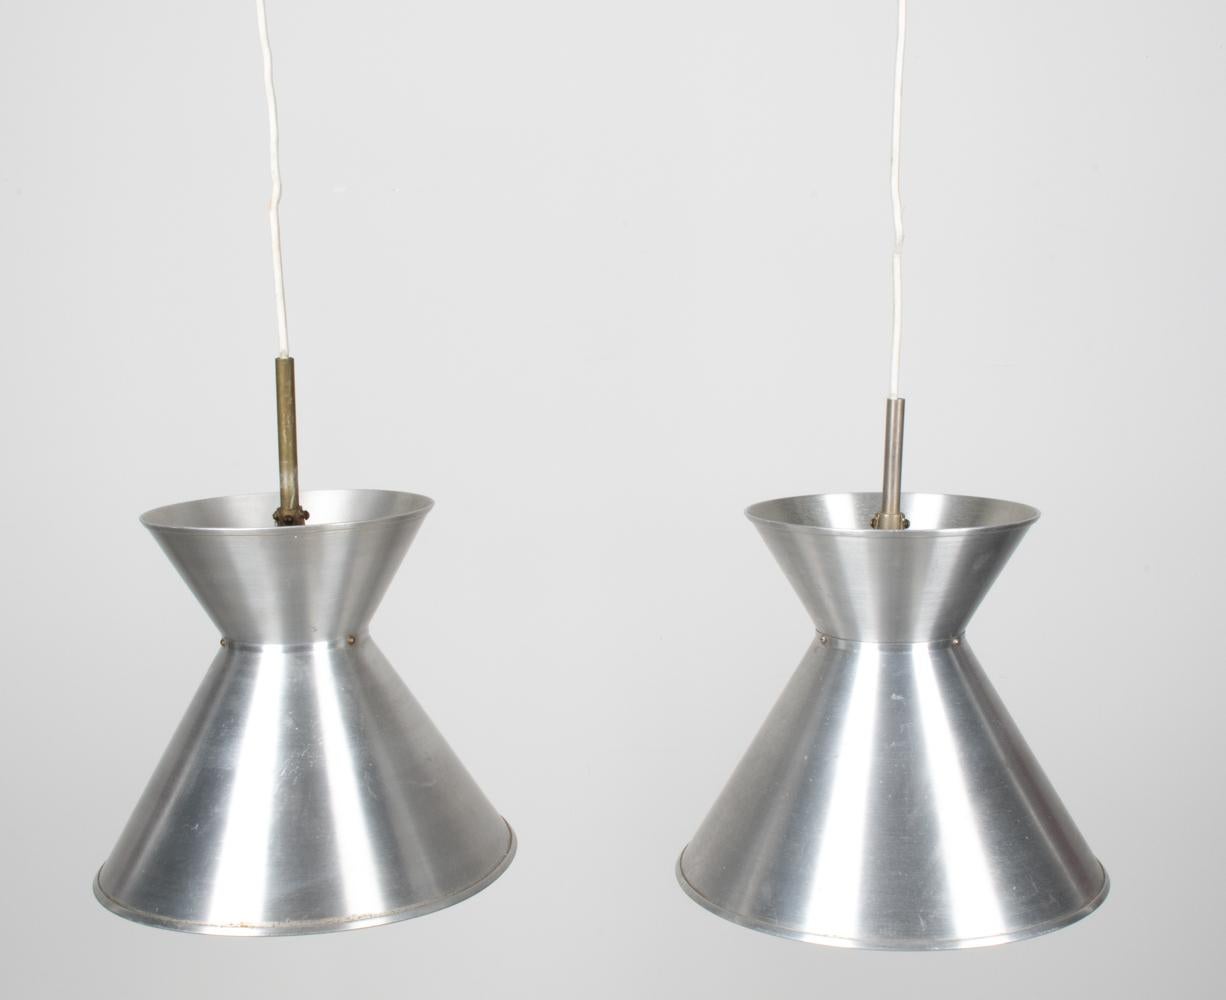 Illuminez votre espace avec une touche de modernisme danois : voici les lampes suspendues modèle MK 114, une collaboration magistrale entre Mogens Koch et la marque emblématique Louis Poulsen. Ces lampes suspendues, sculptées avec précision en